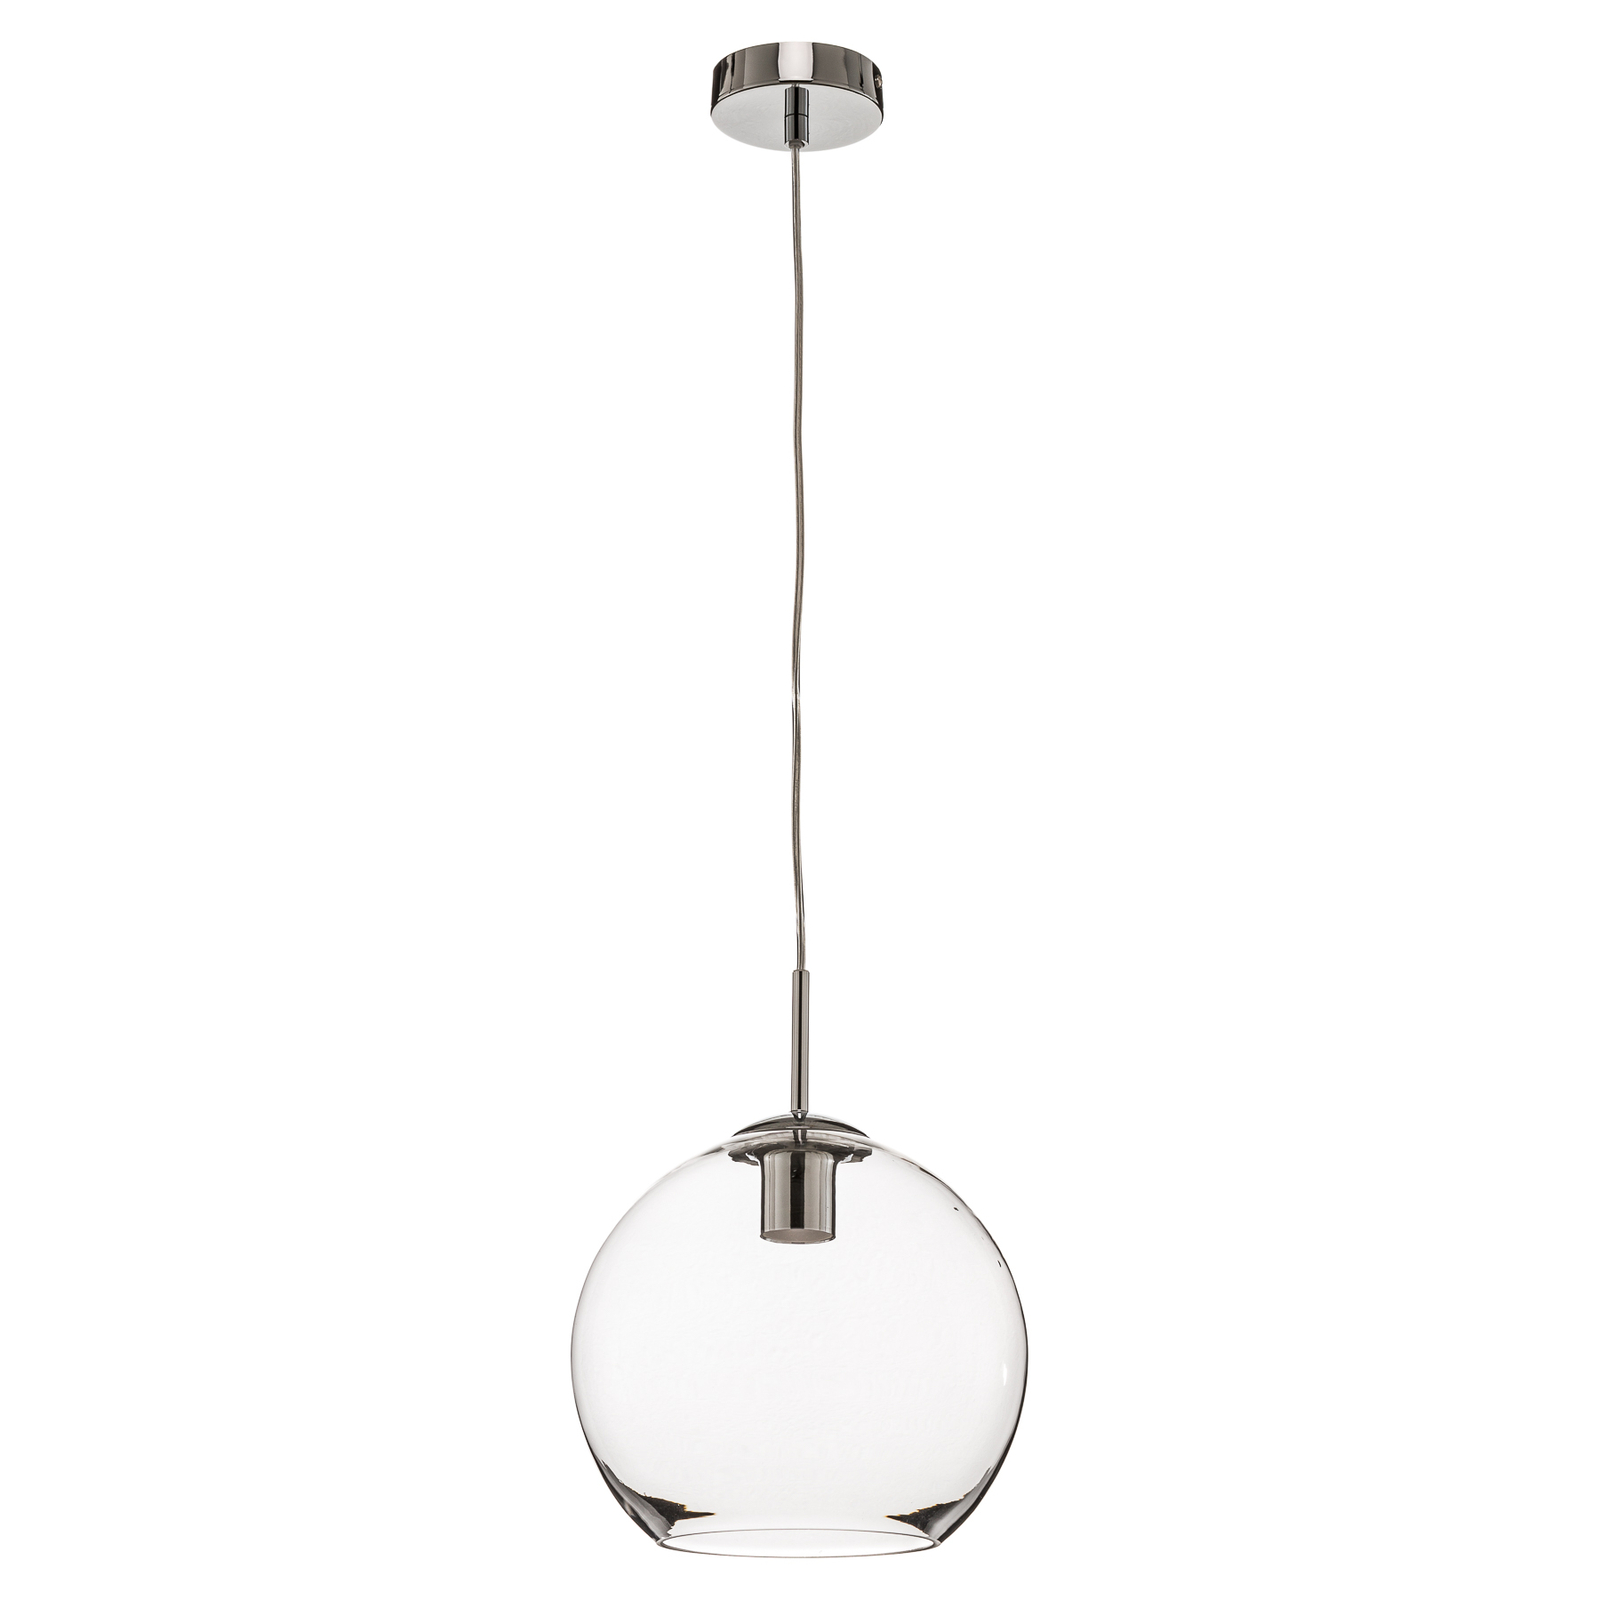 Kulovitá skleněná závěsná lampa Balls, 25 cm, čirá